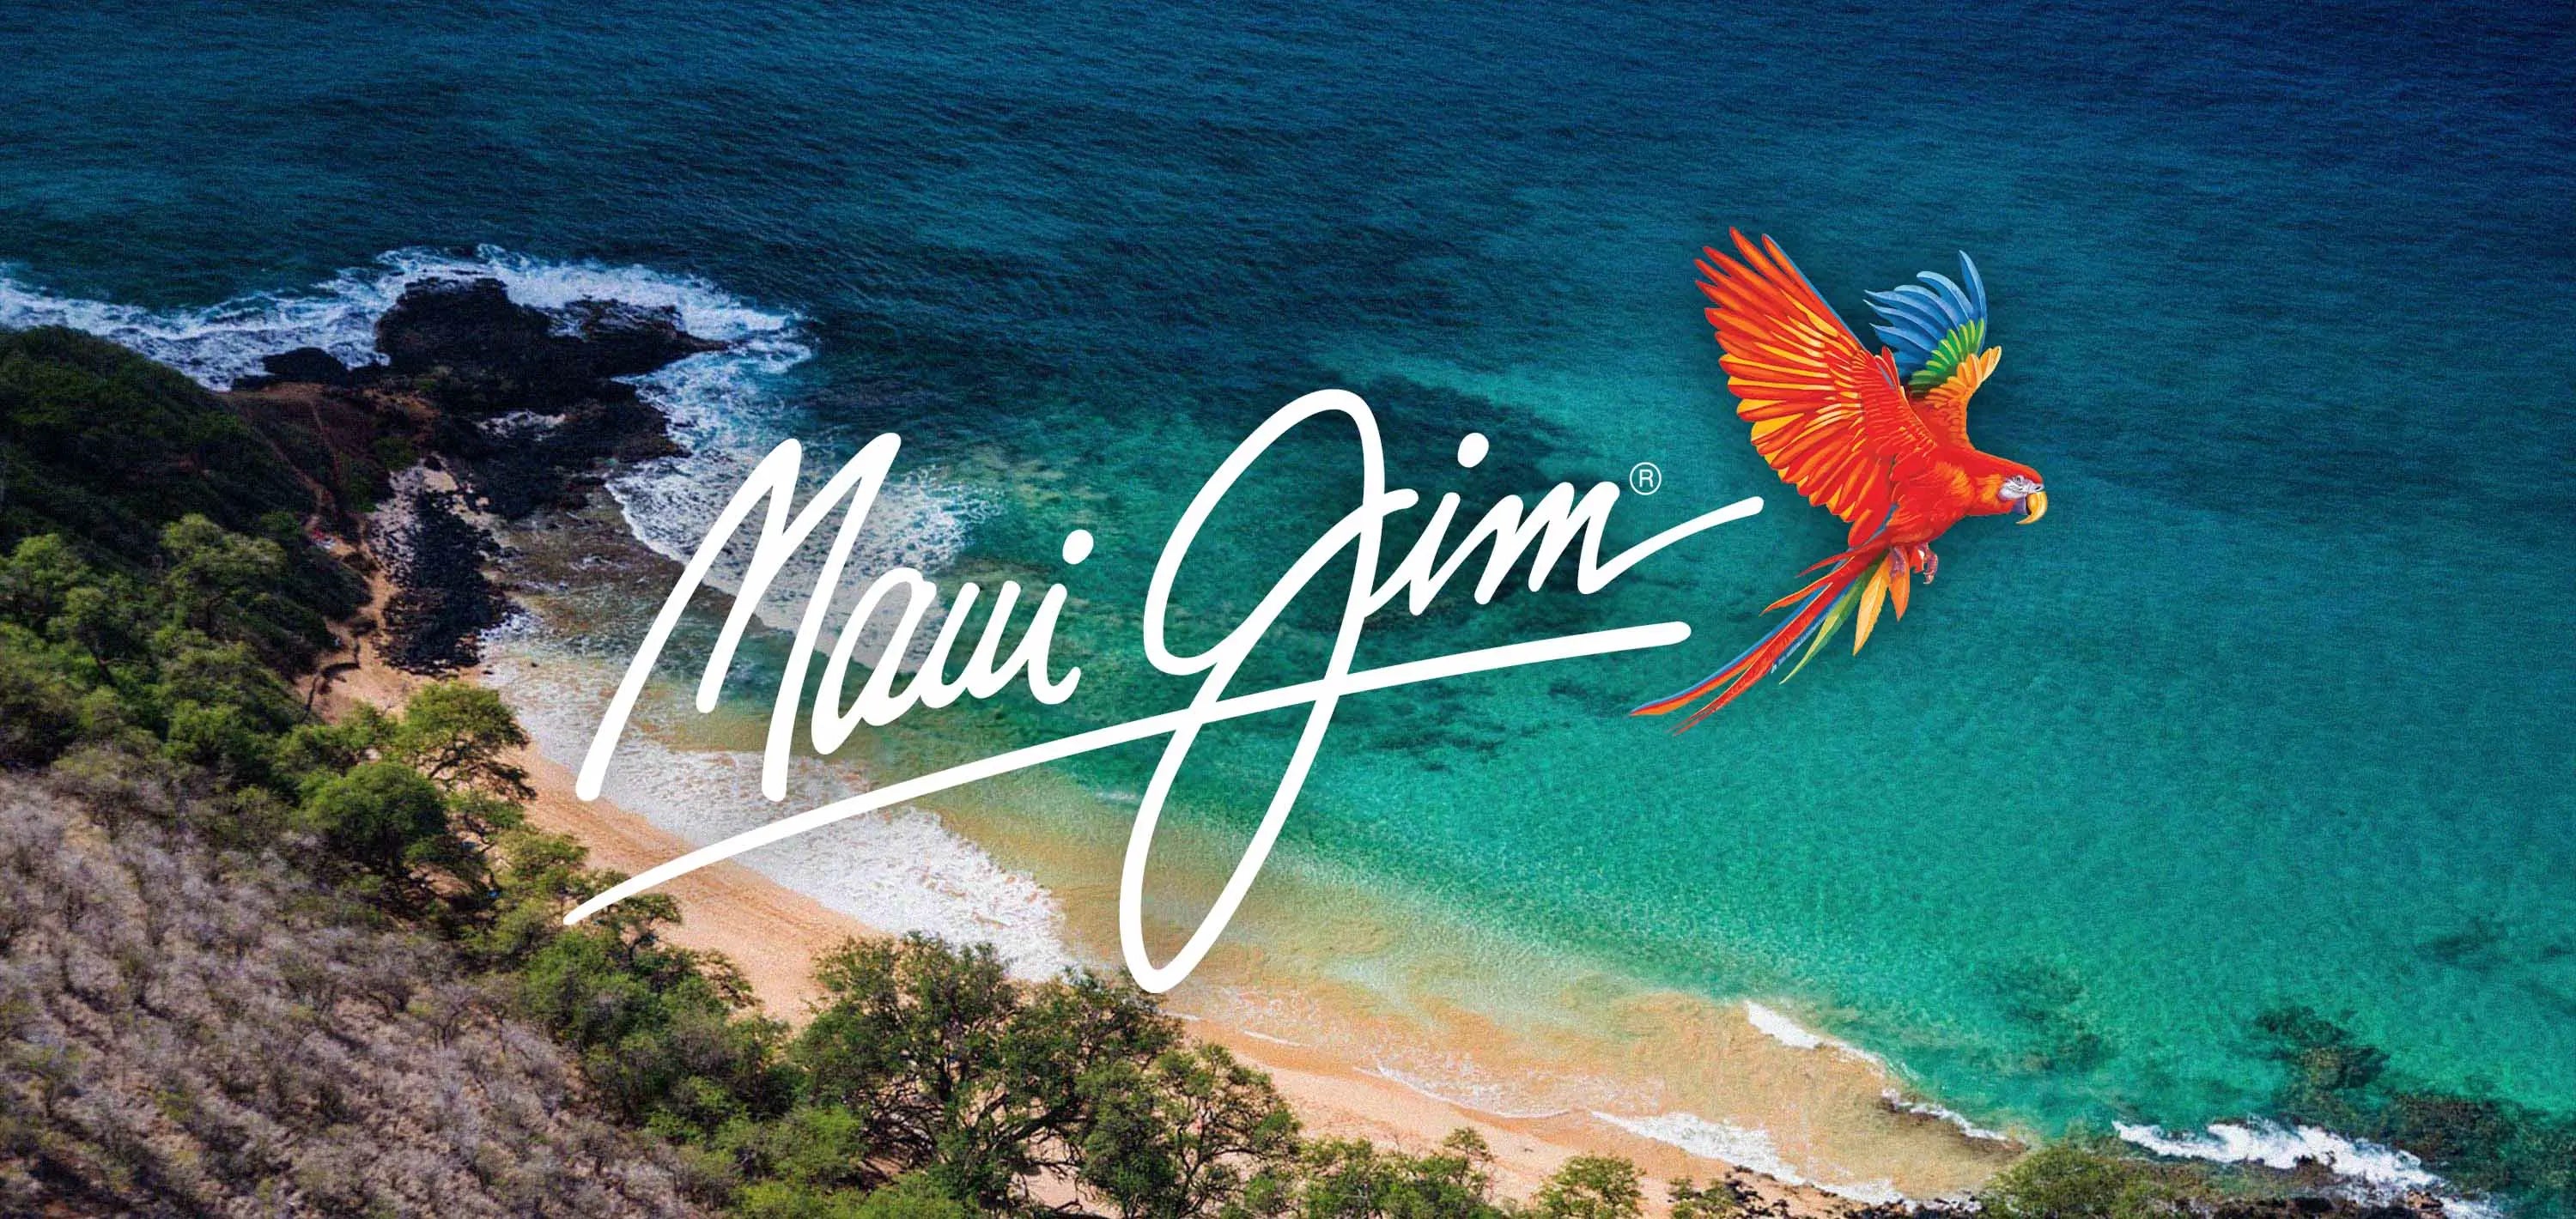 Immagine iconica del marchio Maui Jim